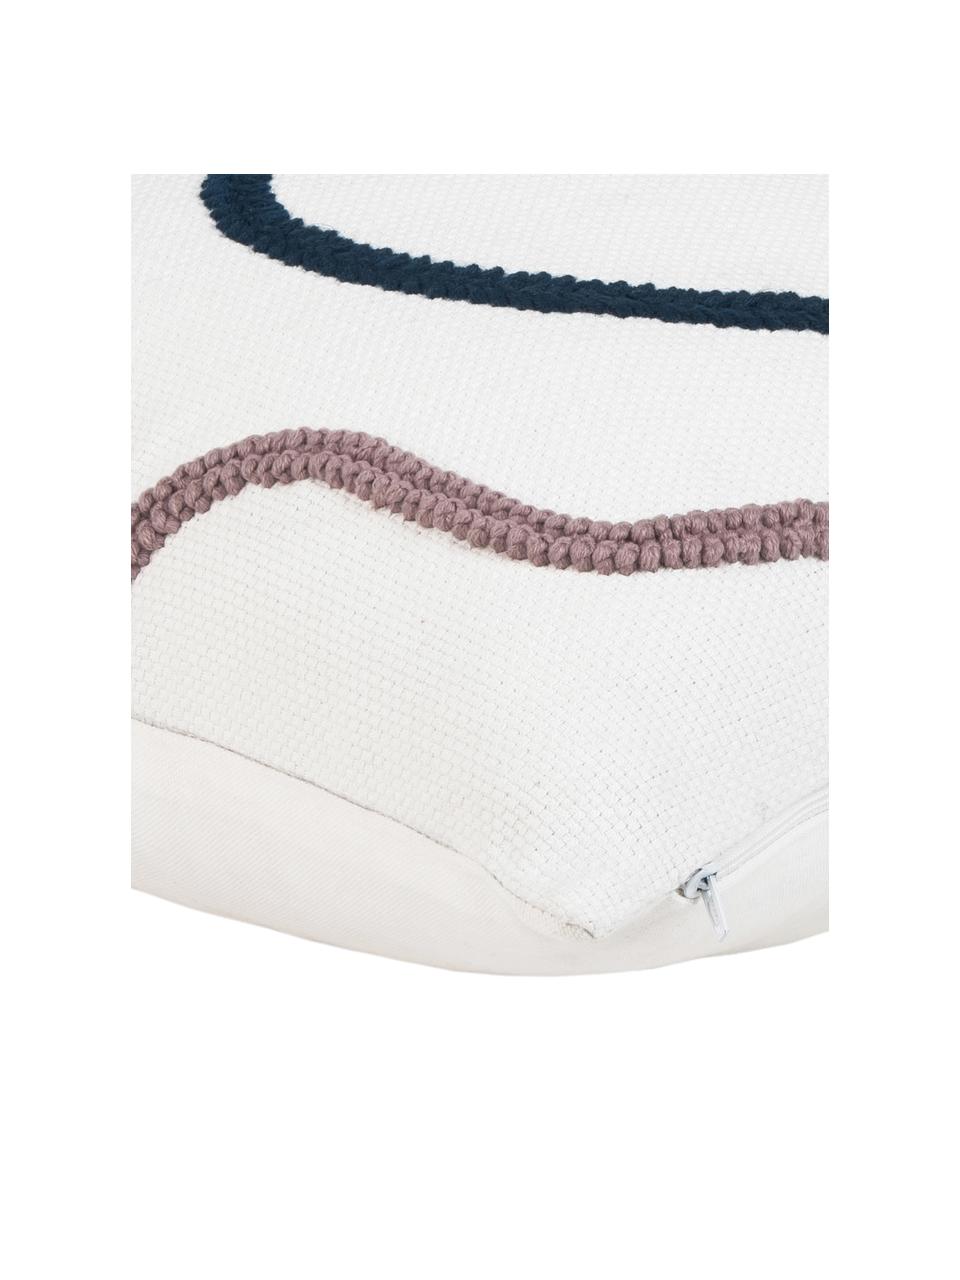 Kissenhülle Wassily mit abstrakter Verzierung, 100% Baumwolle, Bunt, B 45 x L 45 cm